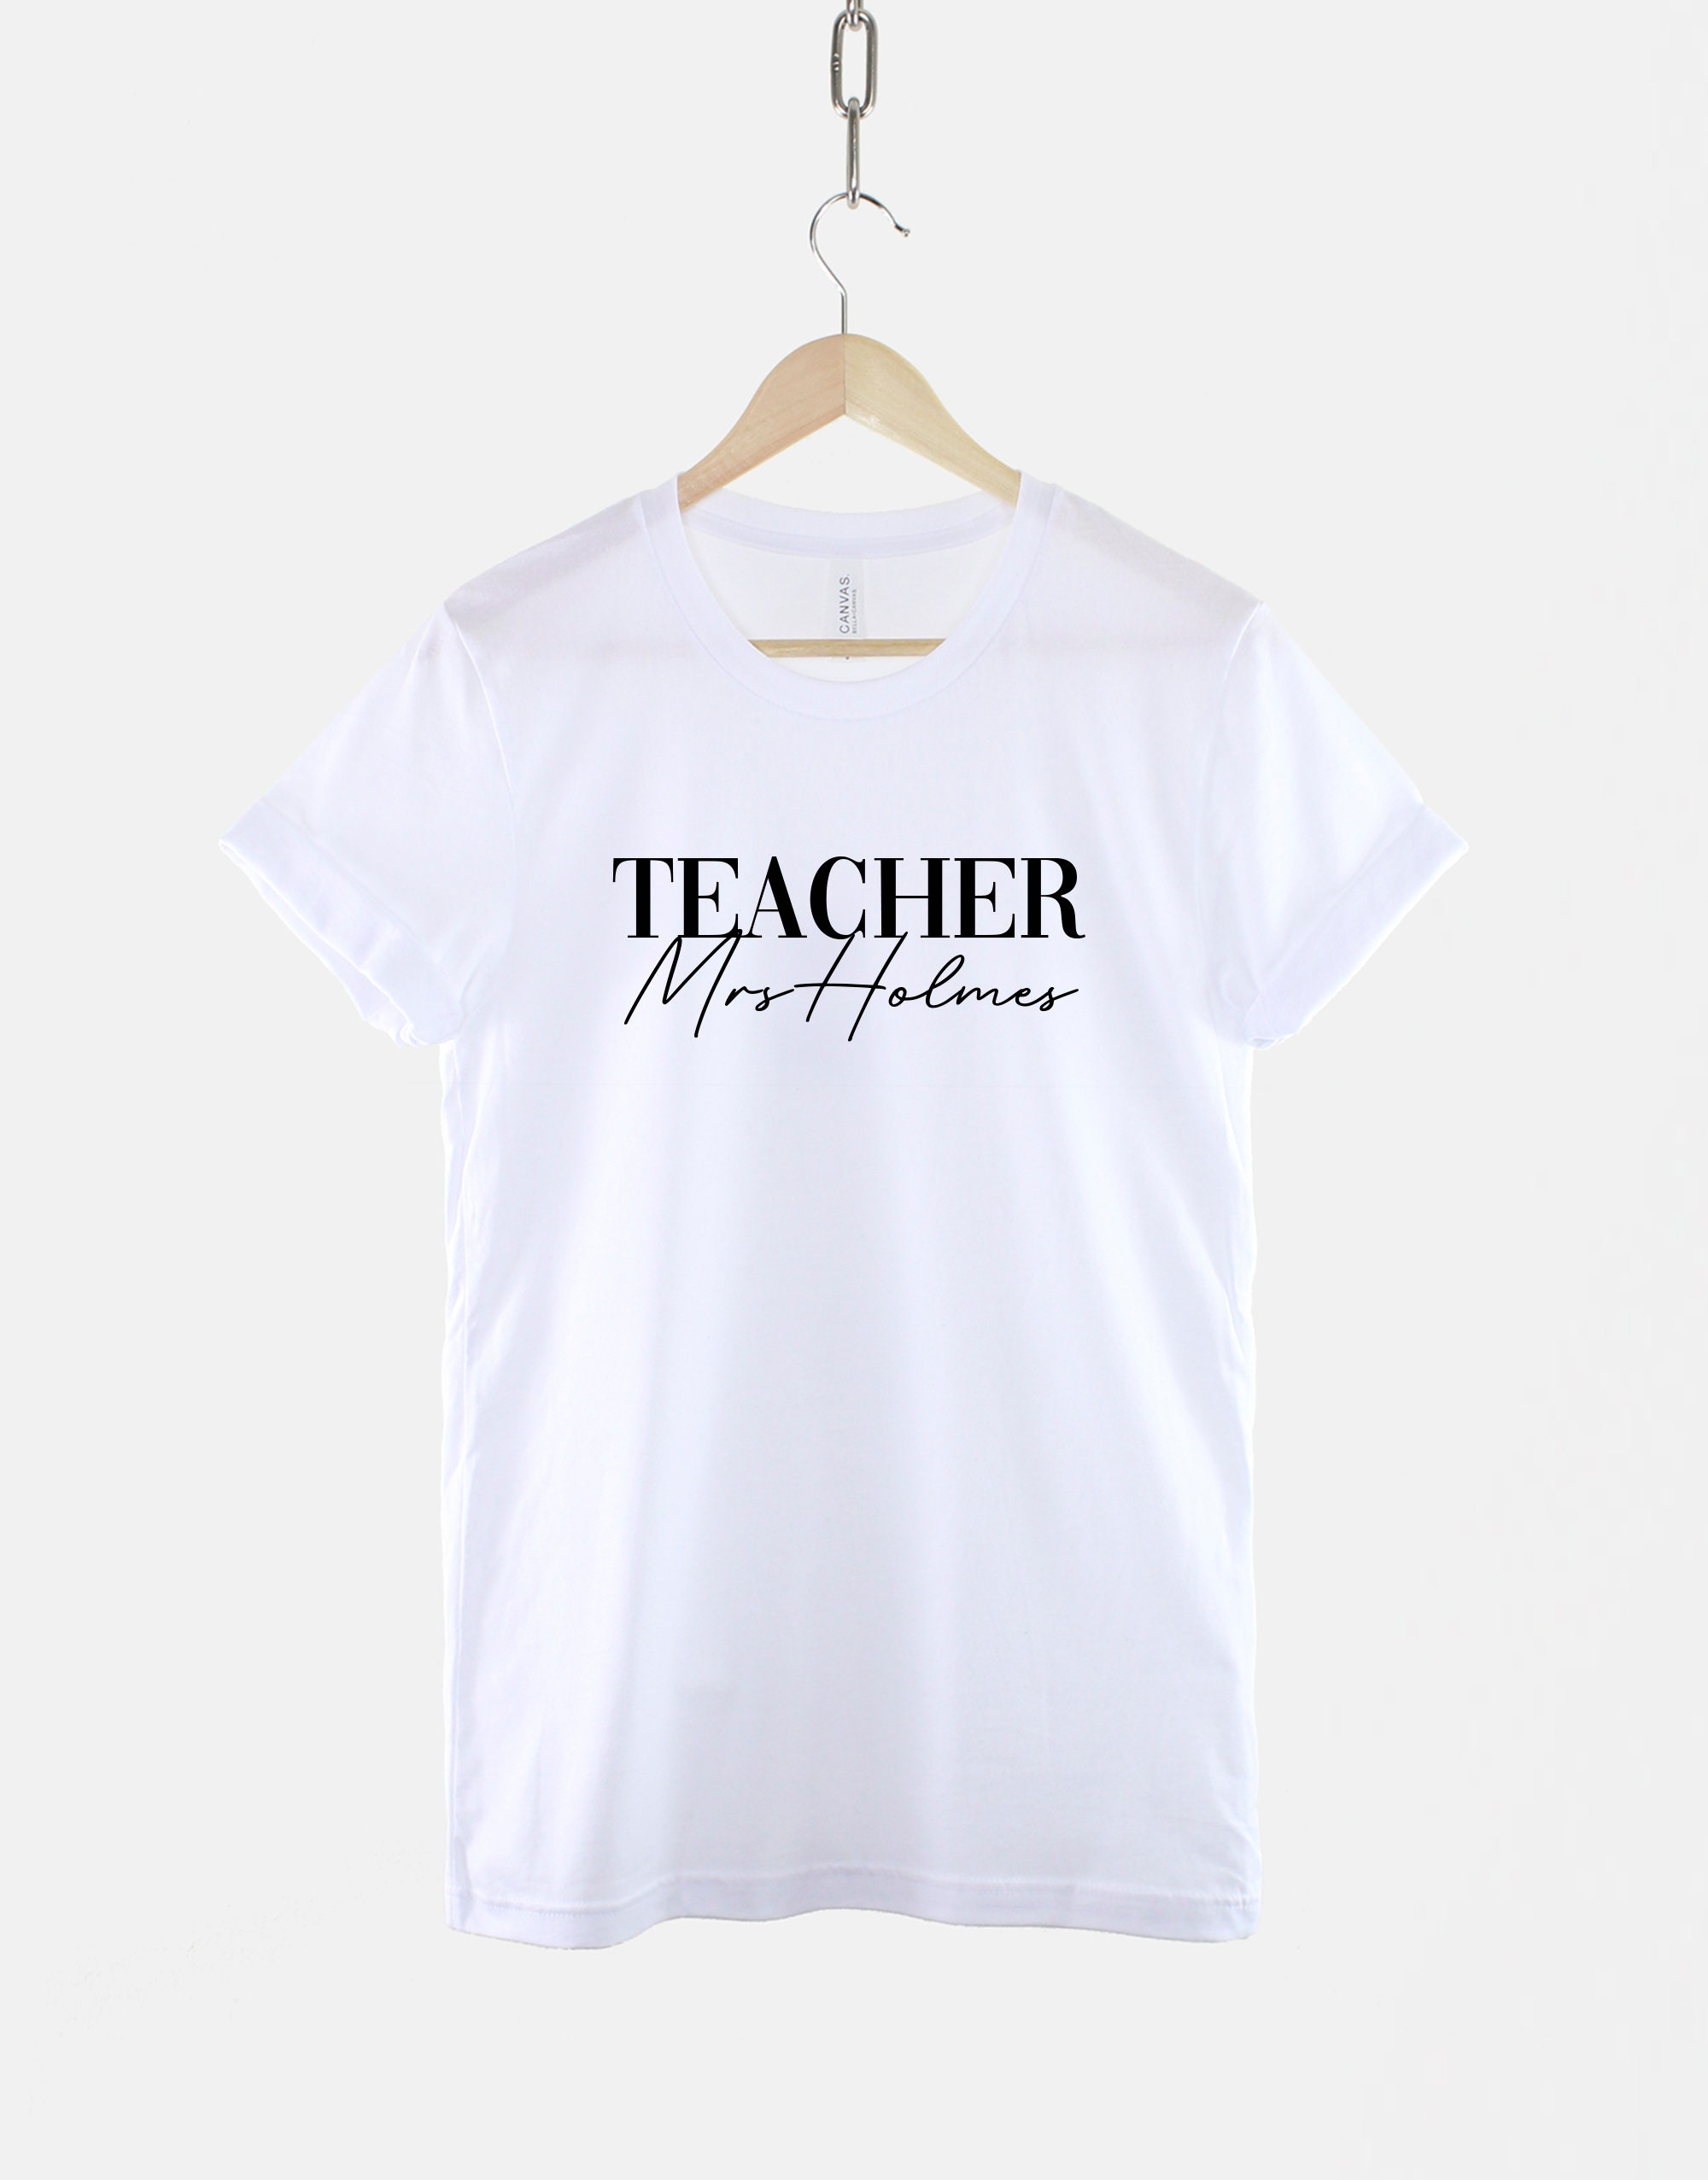 Customized Teacher T-Shirt - Custom School Teacher Shirt